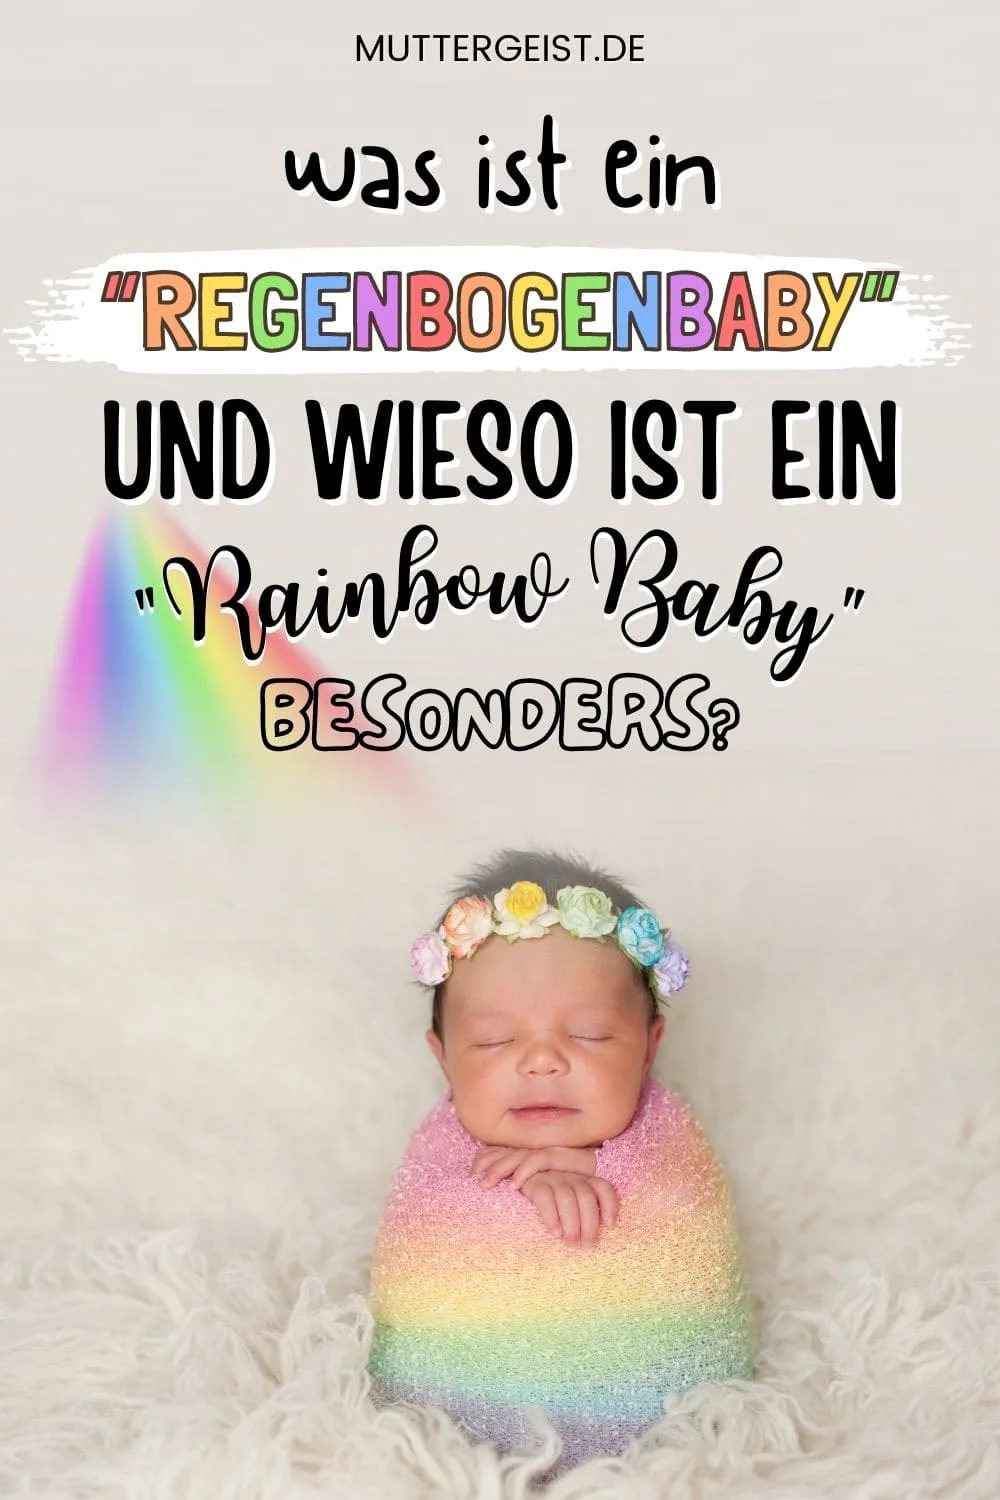 Was Ist Ein “Regenbogenbaby” Und Wieso Ist Ein “Rainbow Baby” Besonders? Pinterest